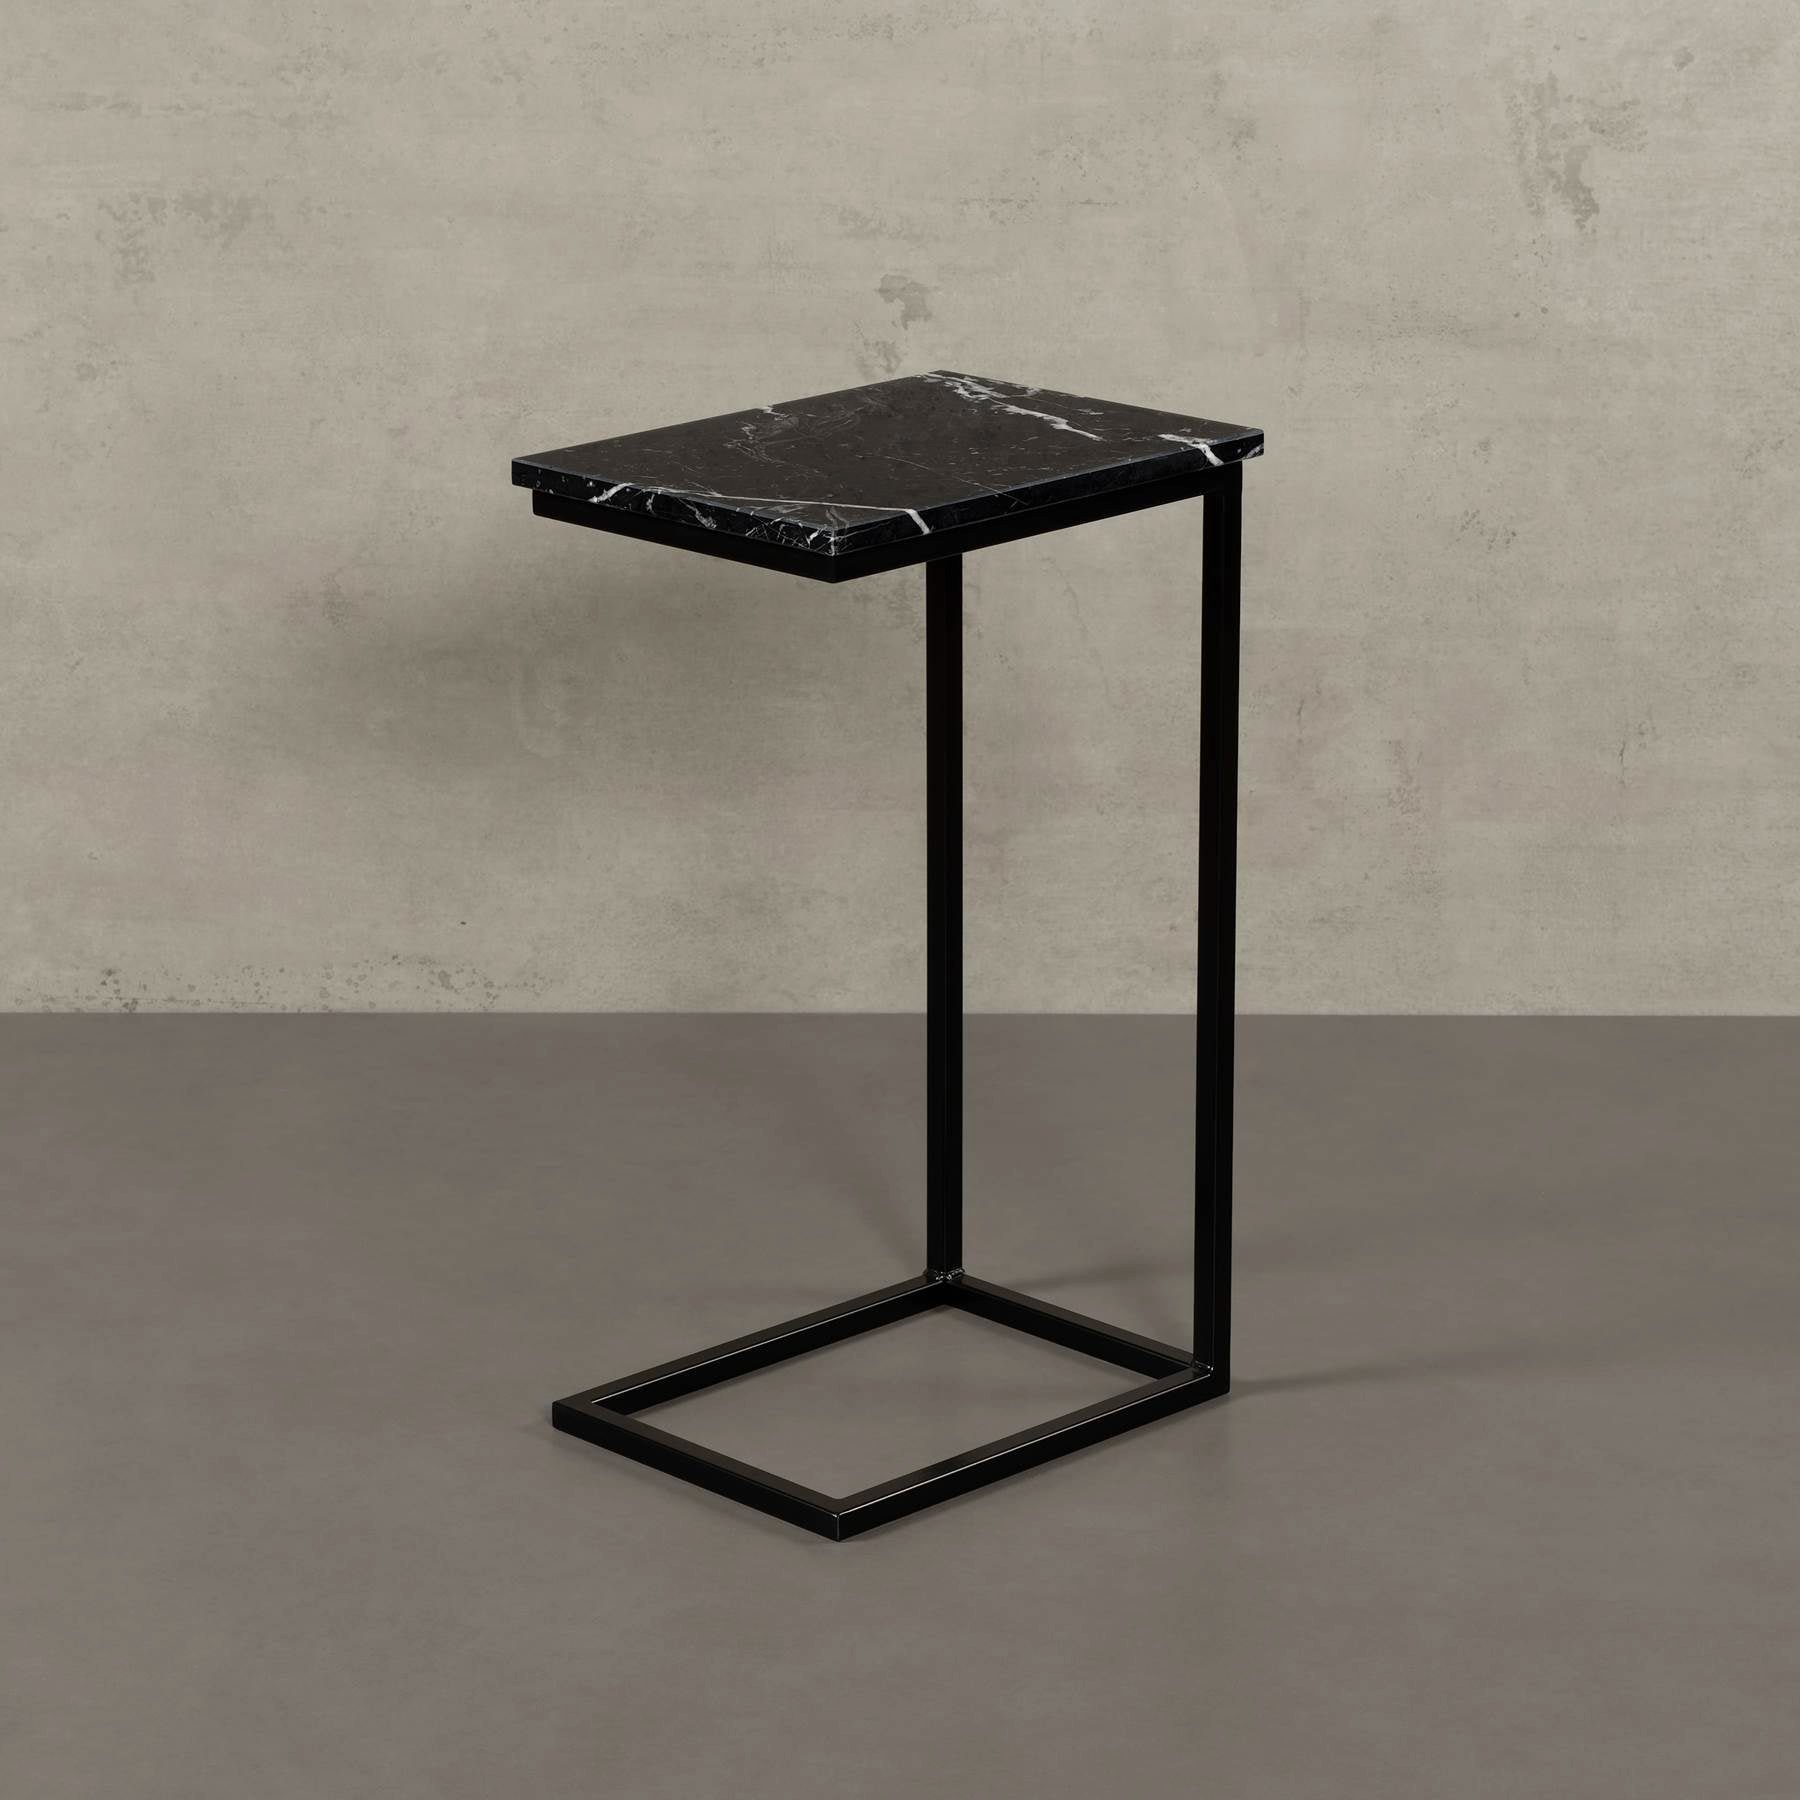 MAGNA Atelier Couchtisch STOCKHOLM mit ECHTEM MARMOR, Wohnzimmer Tisch eckig, Laptoptisch, schwarz Metallgestell, 40x30x68cm Nero Marquina